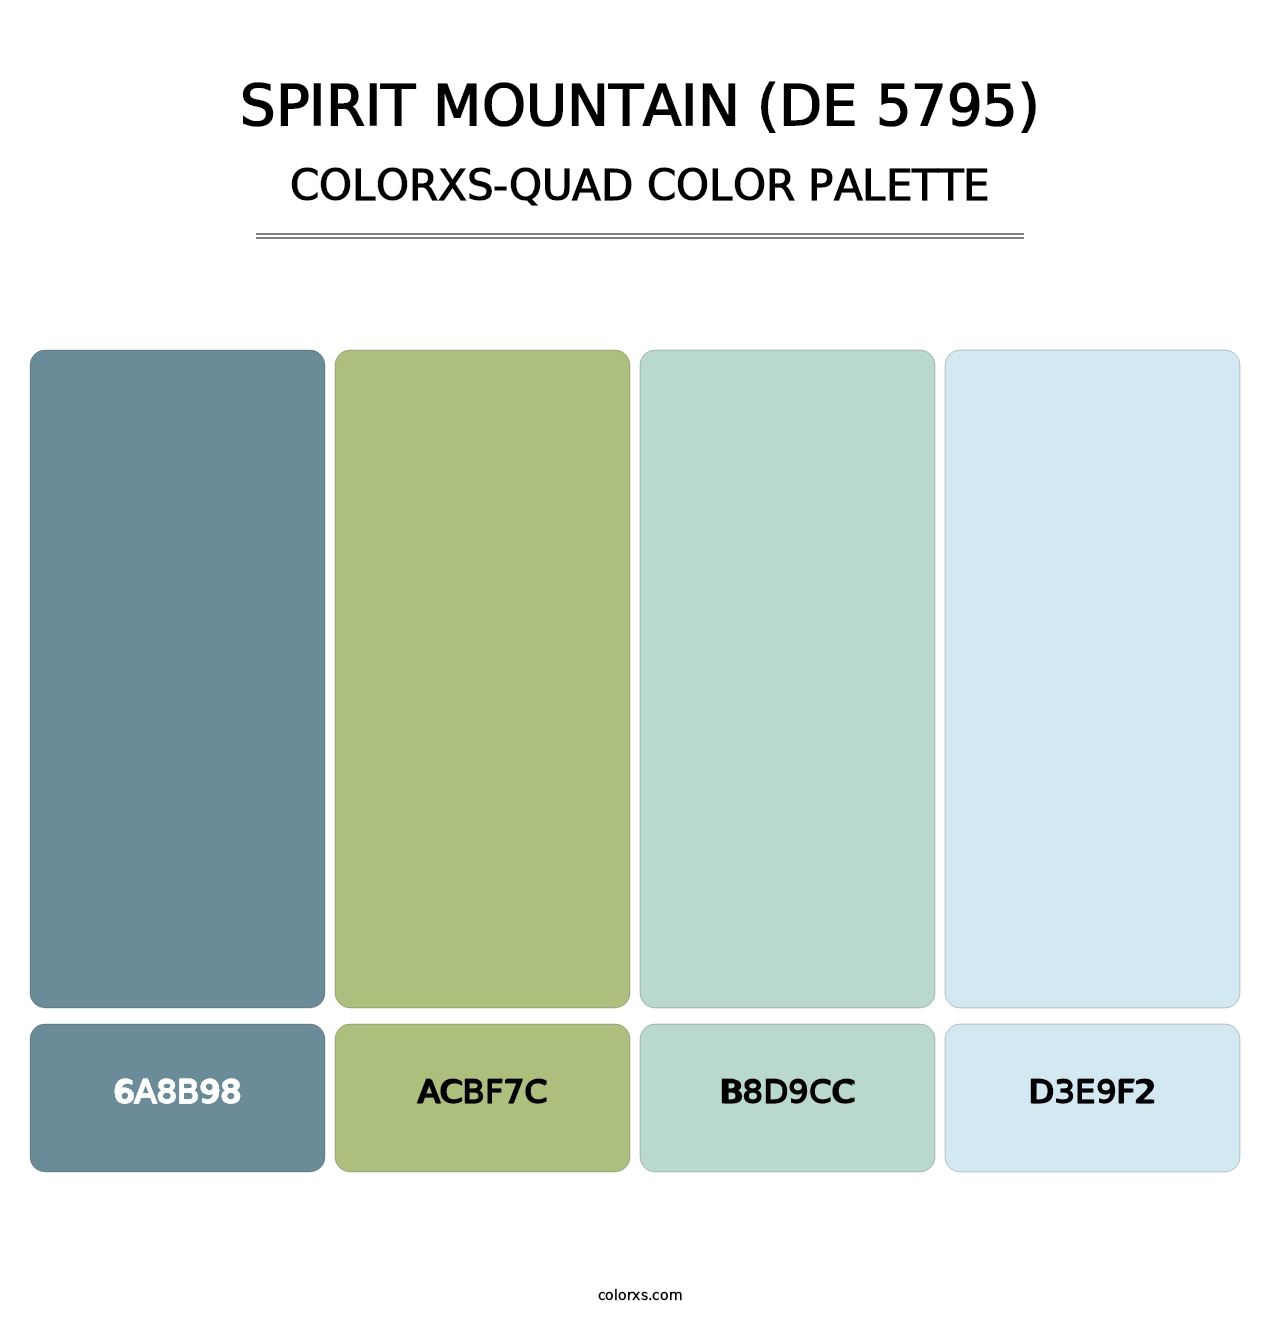 Spirit Mountain (DE 5795) - Colorxs Quad Palette